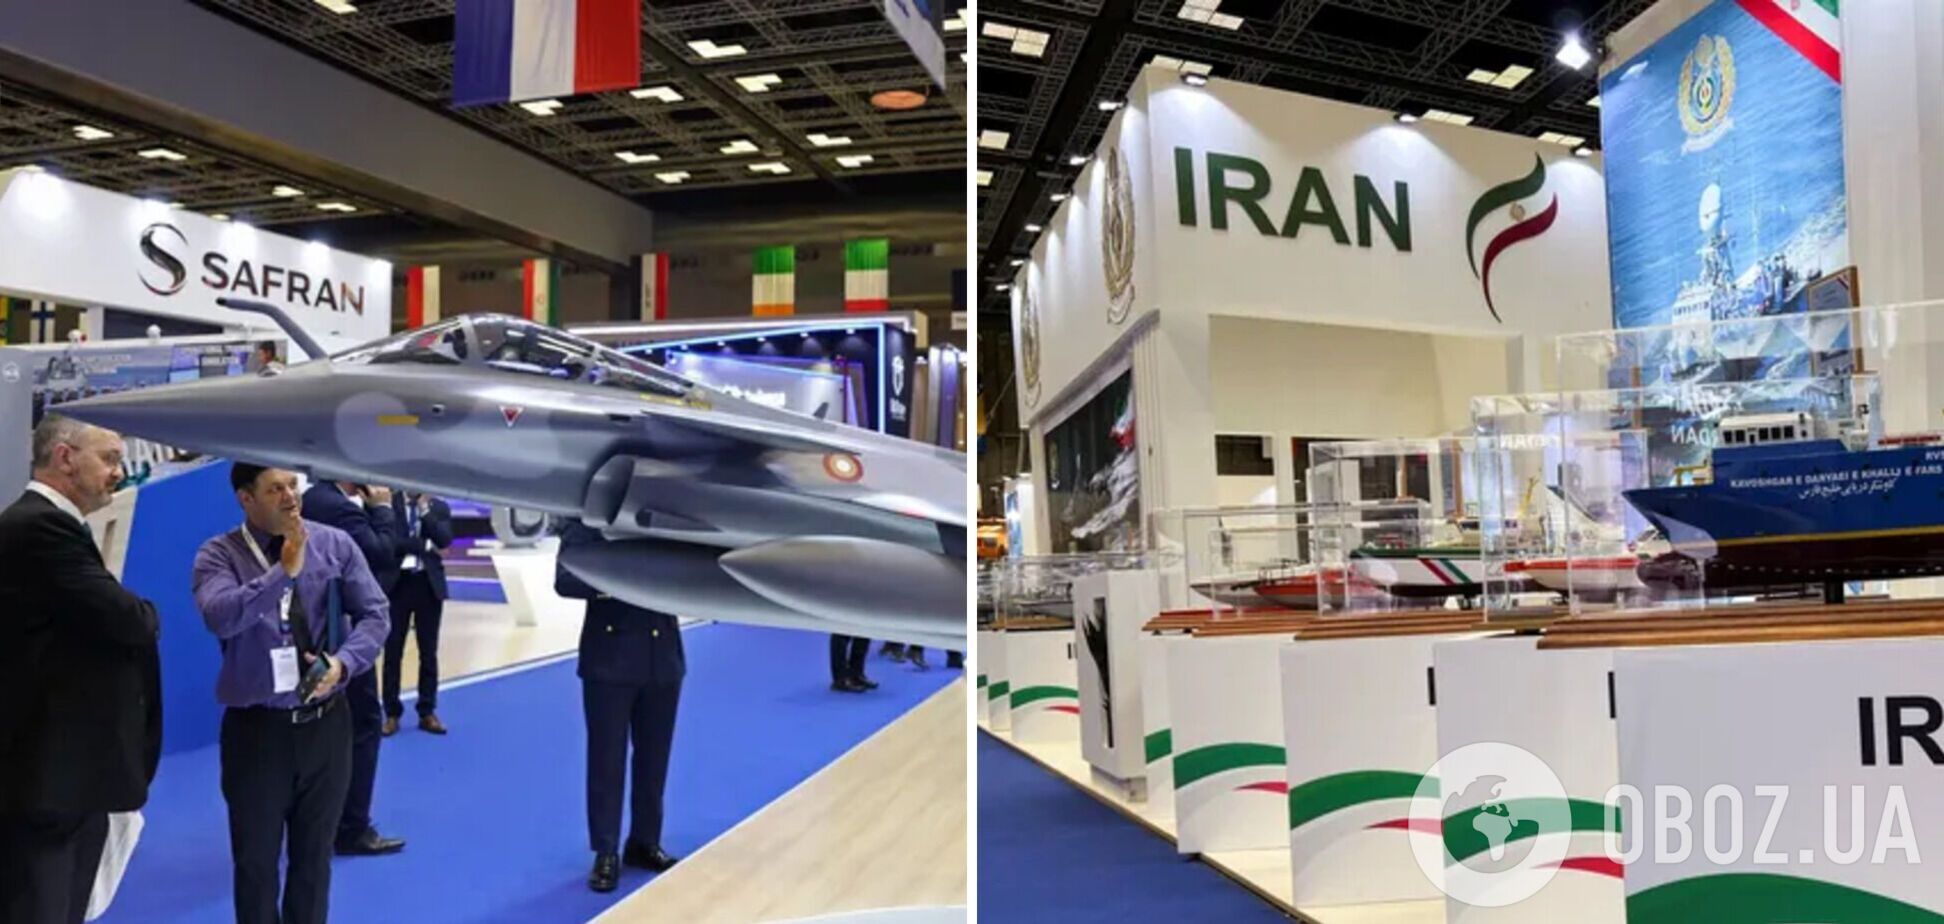 Иран, Россия и 'Талибан' приняли участие в выставке оружия в Катаре - Fox News